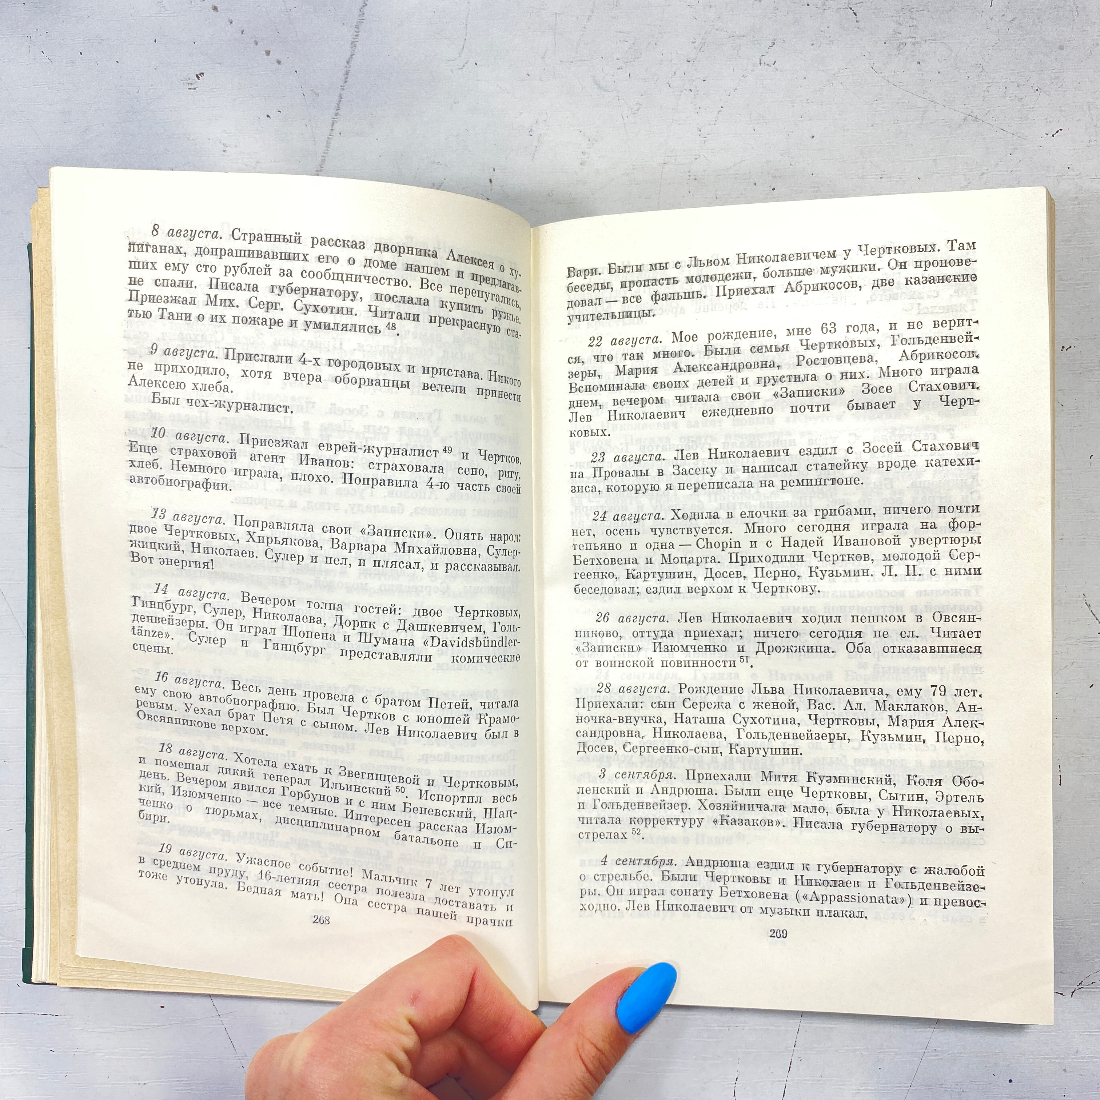 С.А. Толстая, "Дневники", есть дефекты. Изд. художественная литература, 1978г. Картинка 7